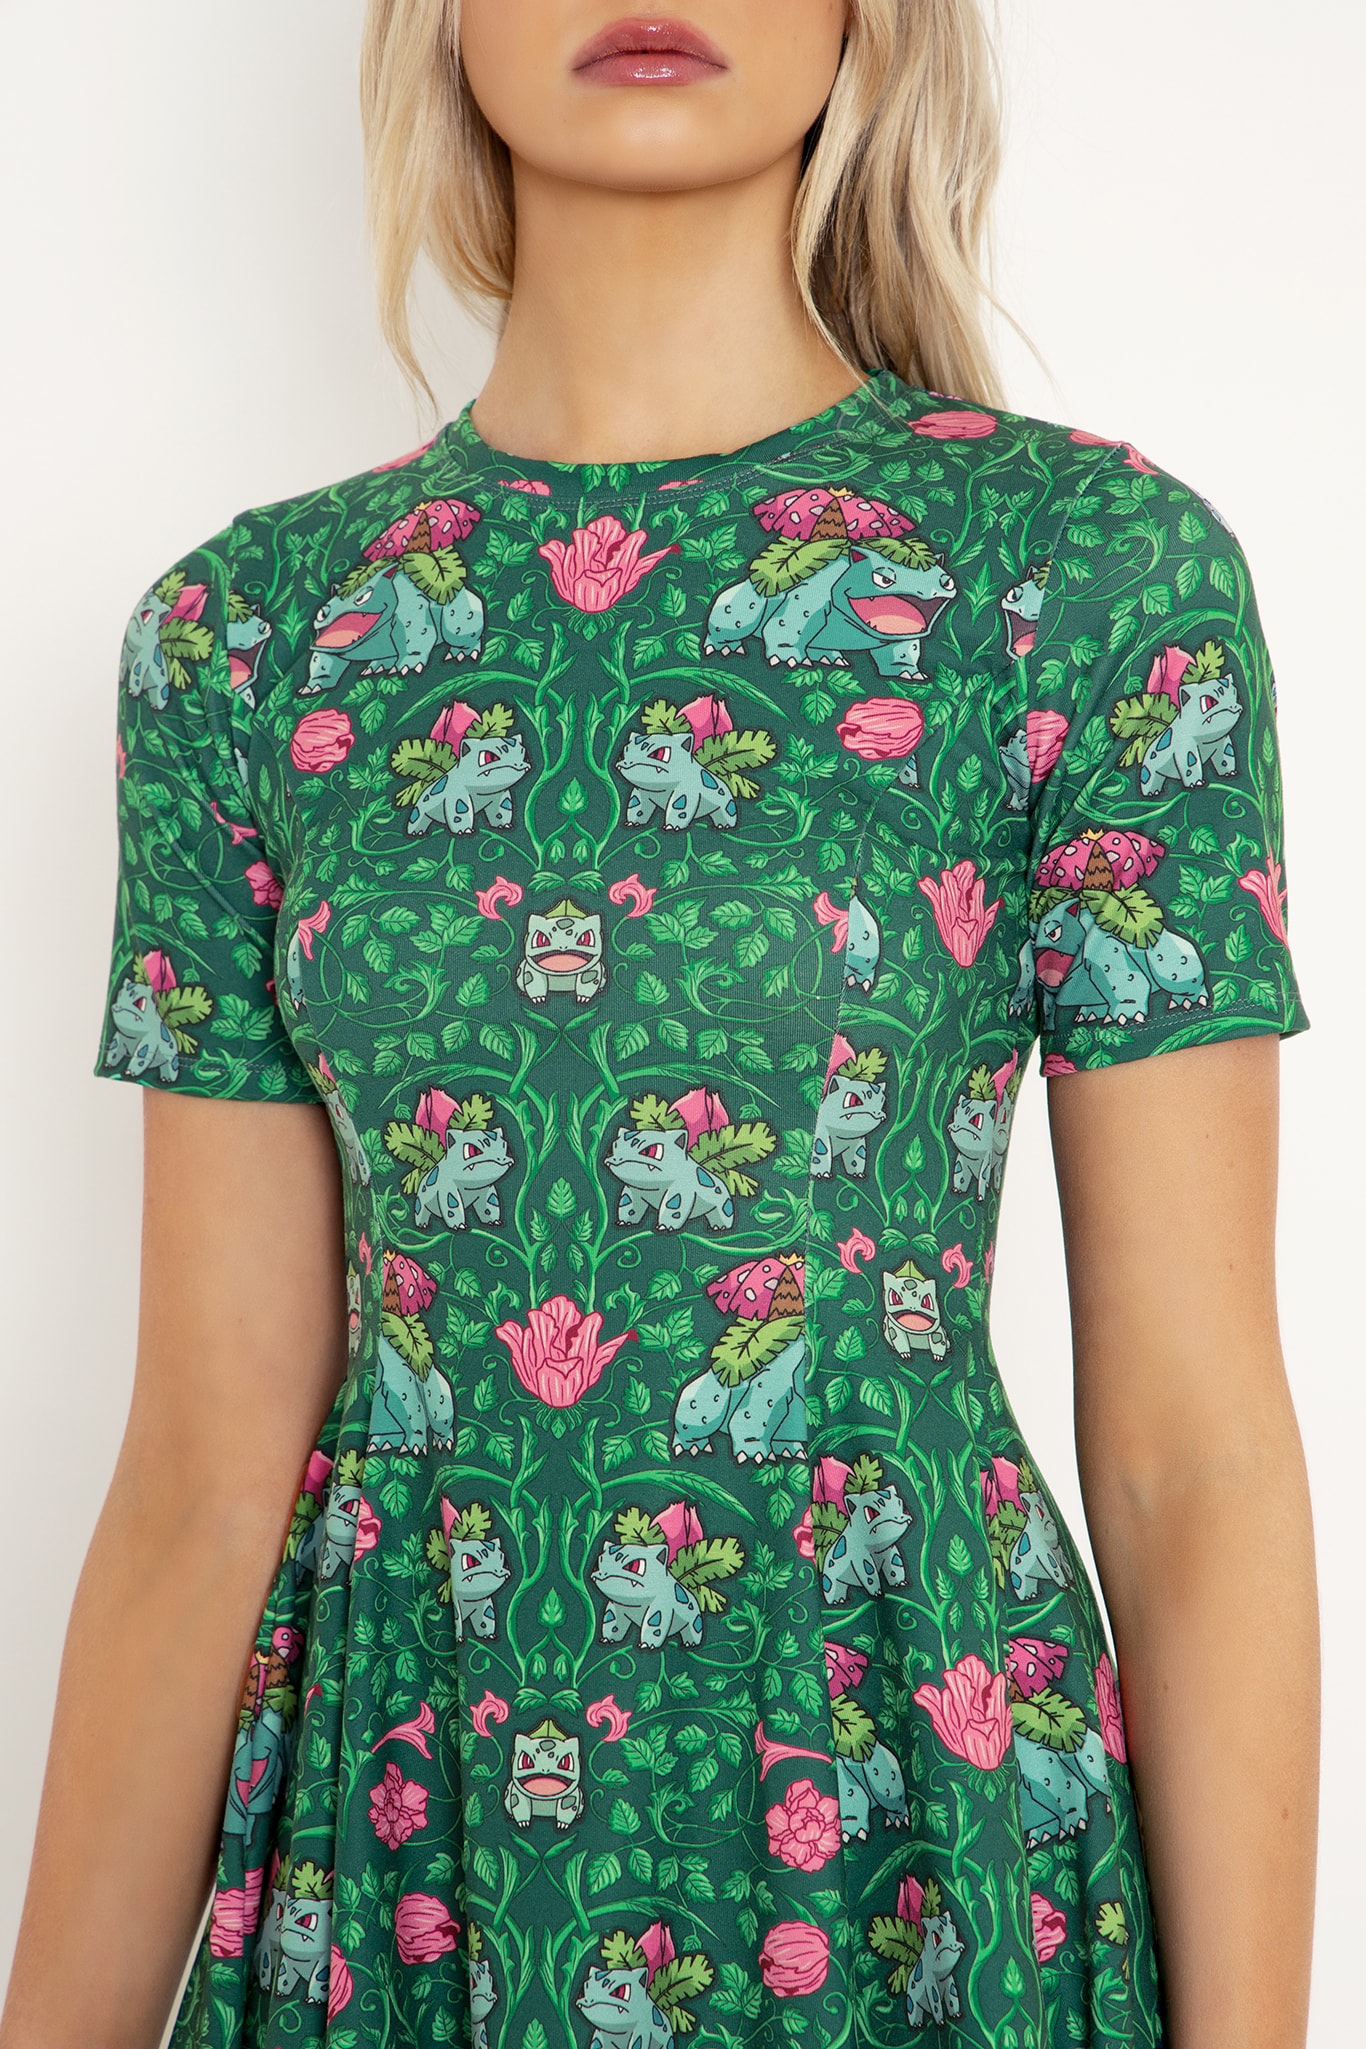 Bulbasaur Evil Tee Dress - Limited